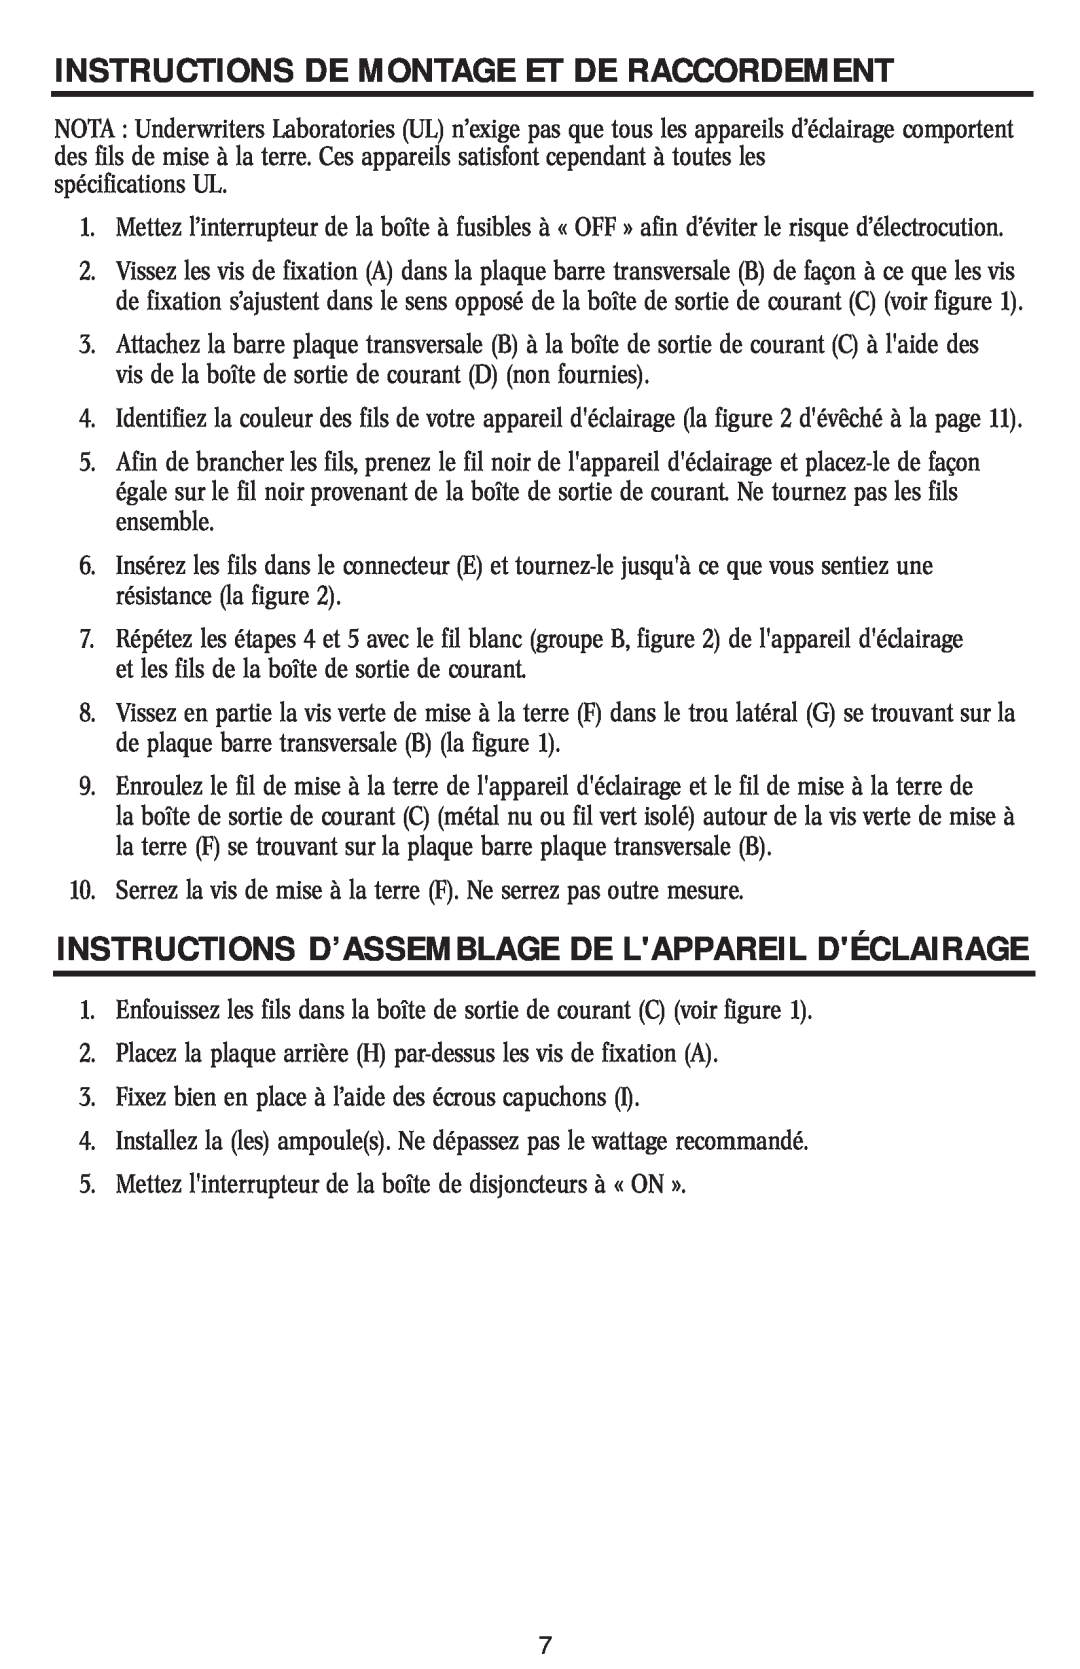 Westinghouse 11704 Instructions D’Assemblage De Lappareil Déclairage, Instructions De Montage Et De Raccordement 